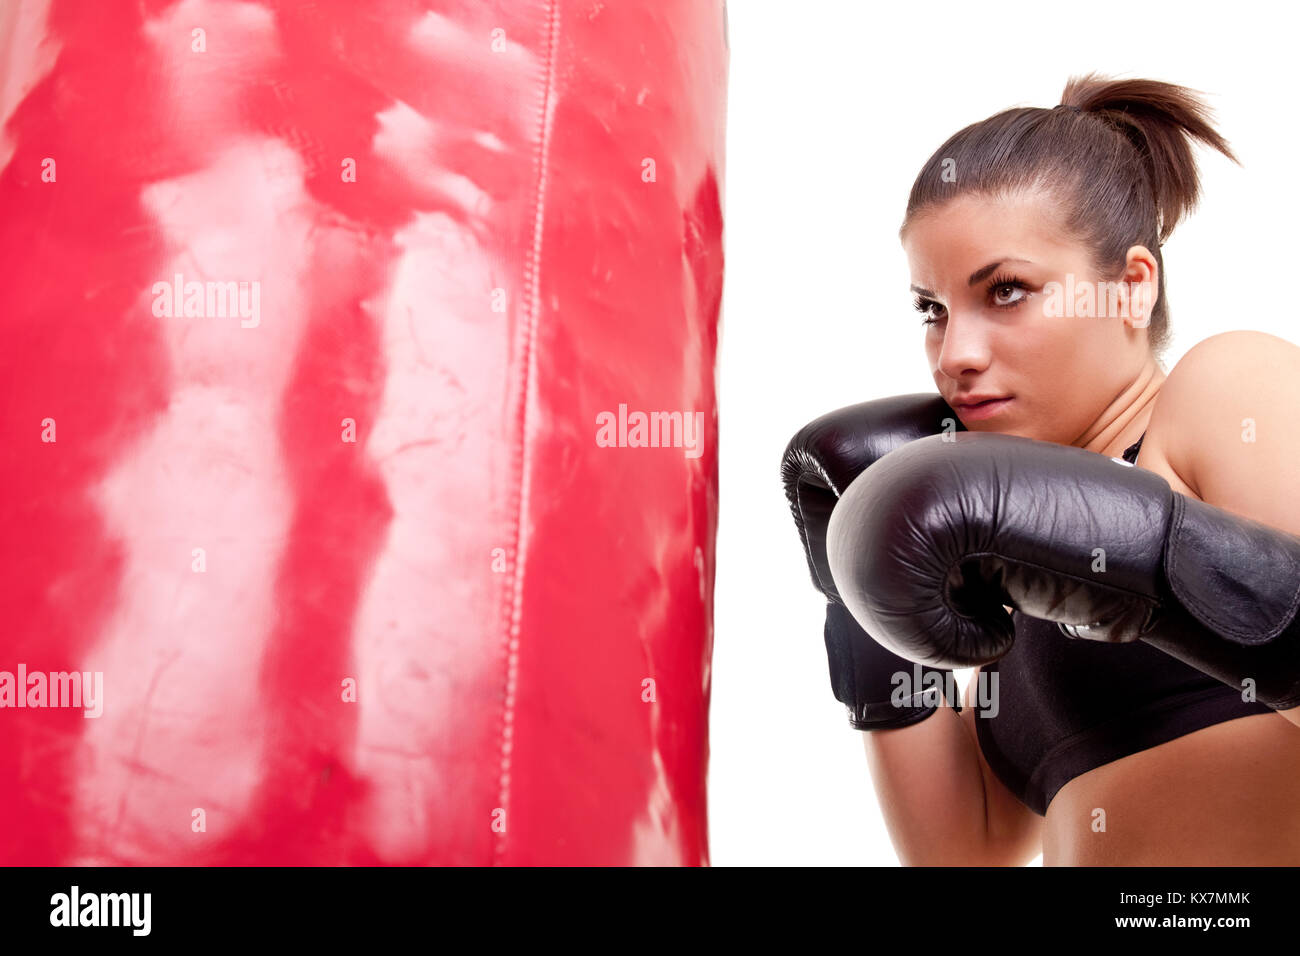 Una Mujer Boxeadora Con Un Chándal Rojo Golpea Un Saco De Boxeo. Fotos,  retratos, imágenes y fotografía de archivo libres de derecho. Image  200247997